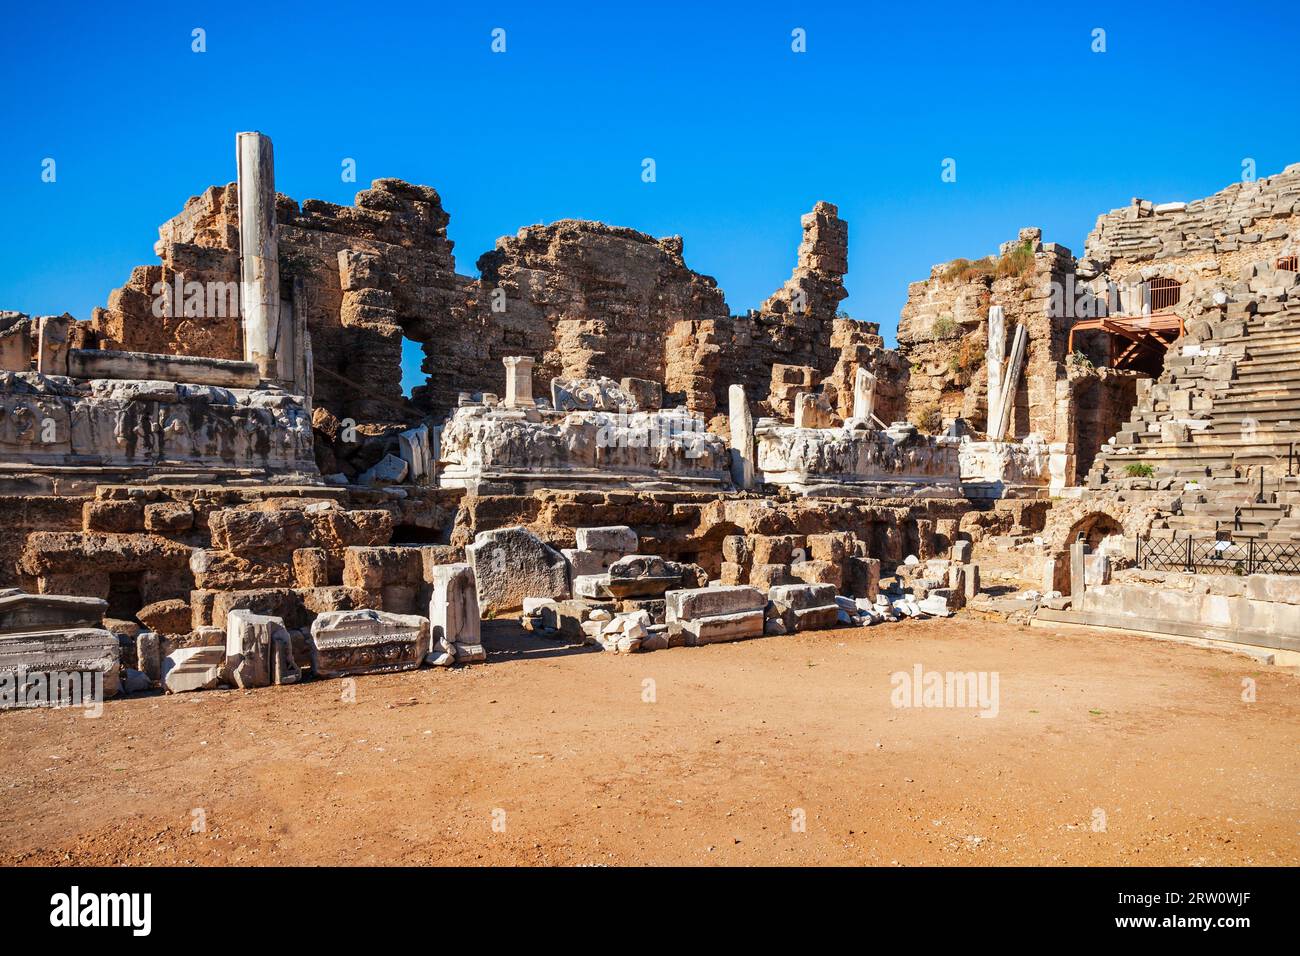 Théâtre romain de Side dans l'ancienne ville De Side dans la région d'Antalya sur la côte méditerranéenne de la Turquie. Banque D'Images